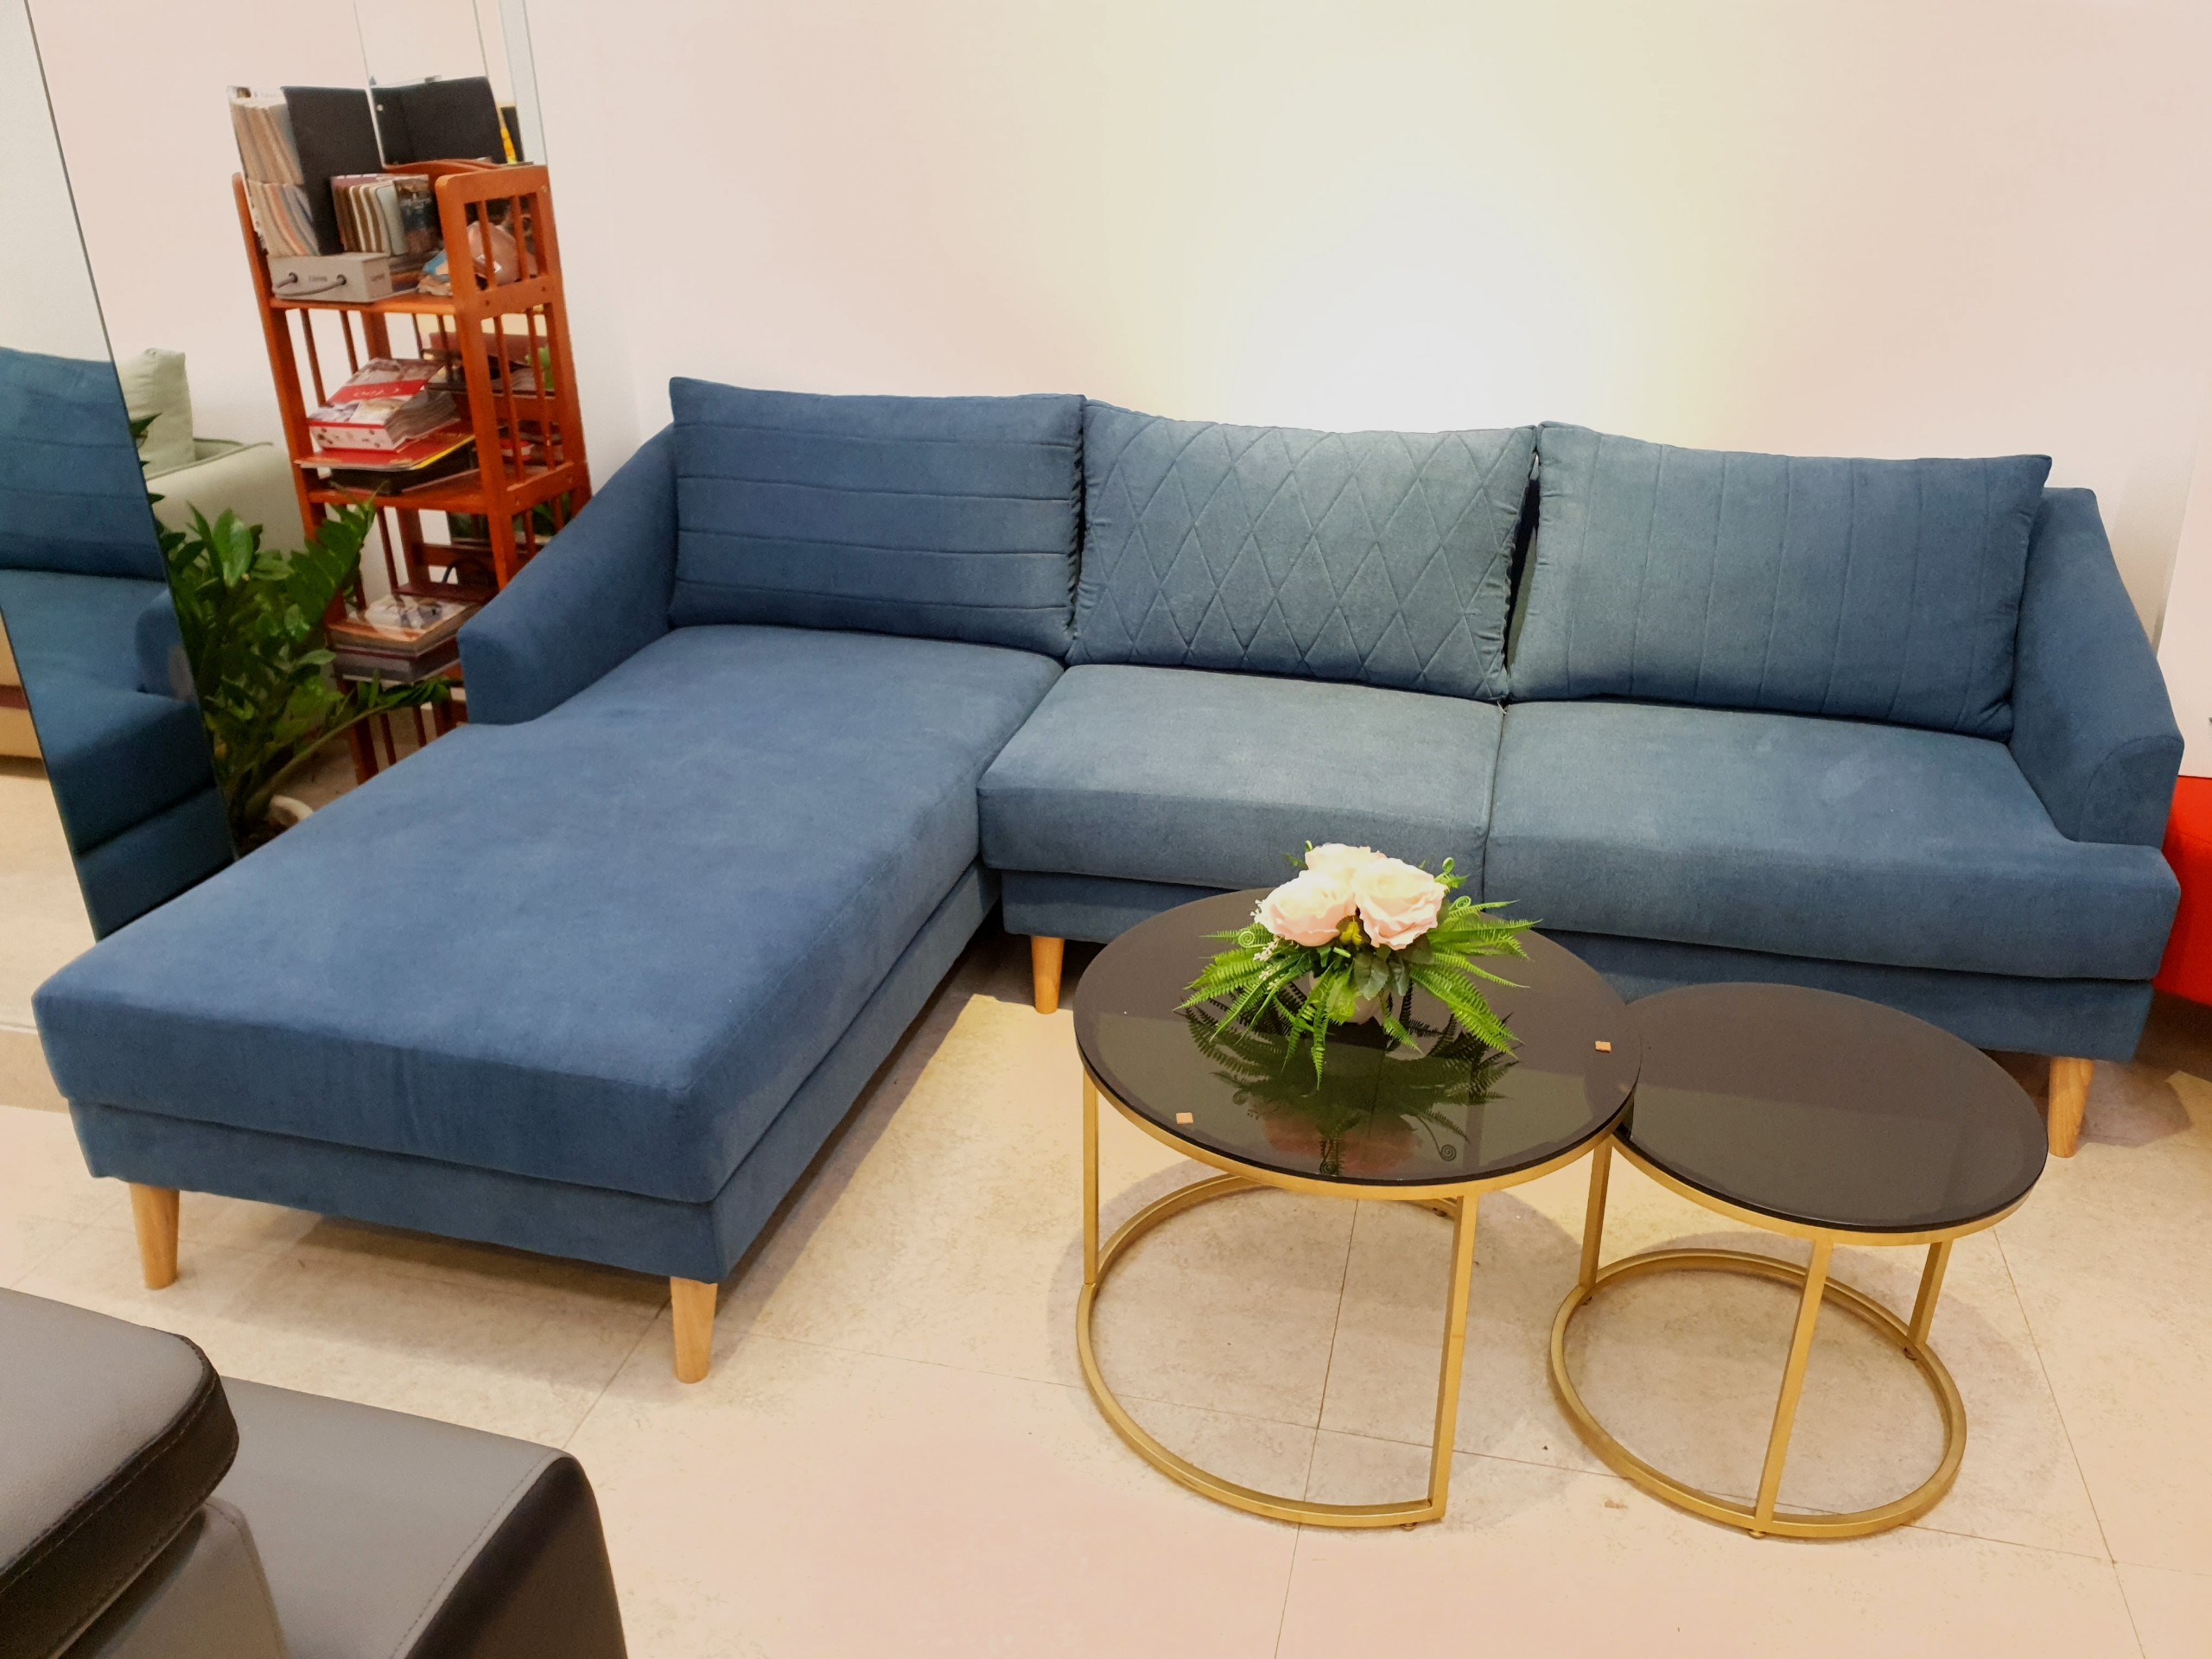 Sofa màu xanh Buôn Ma Thuột được làm từ chất liệu cao cấp và được thiết kế đơn giản nhưng thanh lịch. Với màu sắc tươi tắn, chiếc sofa này sẽ tạo ra không gian sống động và trẻ trung trong ngôi nhà của bạn. Hãy xem hình ảnh chiếc sofa màu xanh đẹp ở Buôn Ma Thuột.